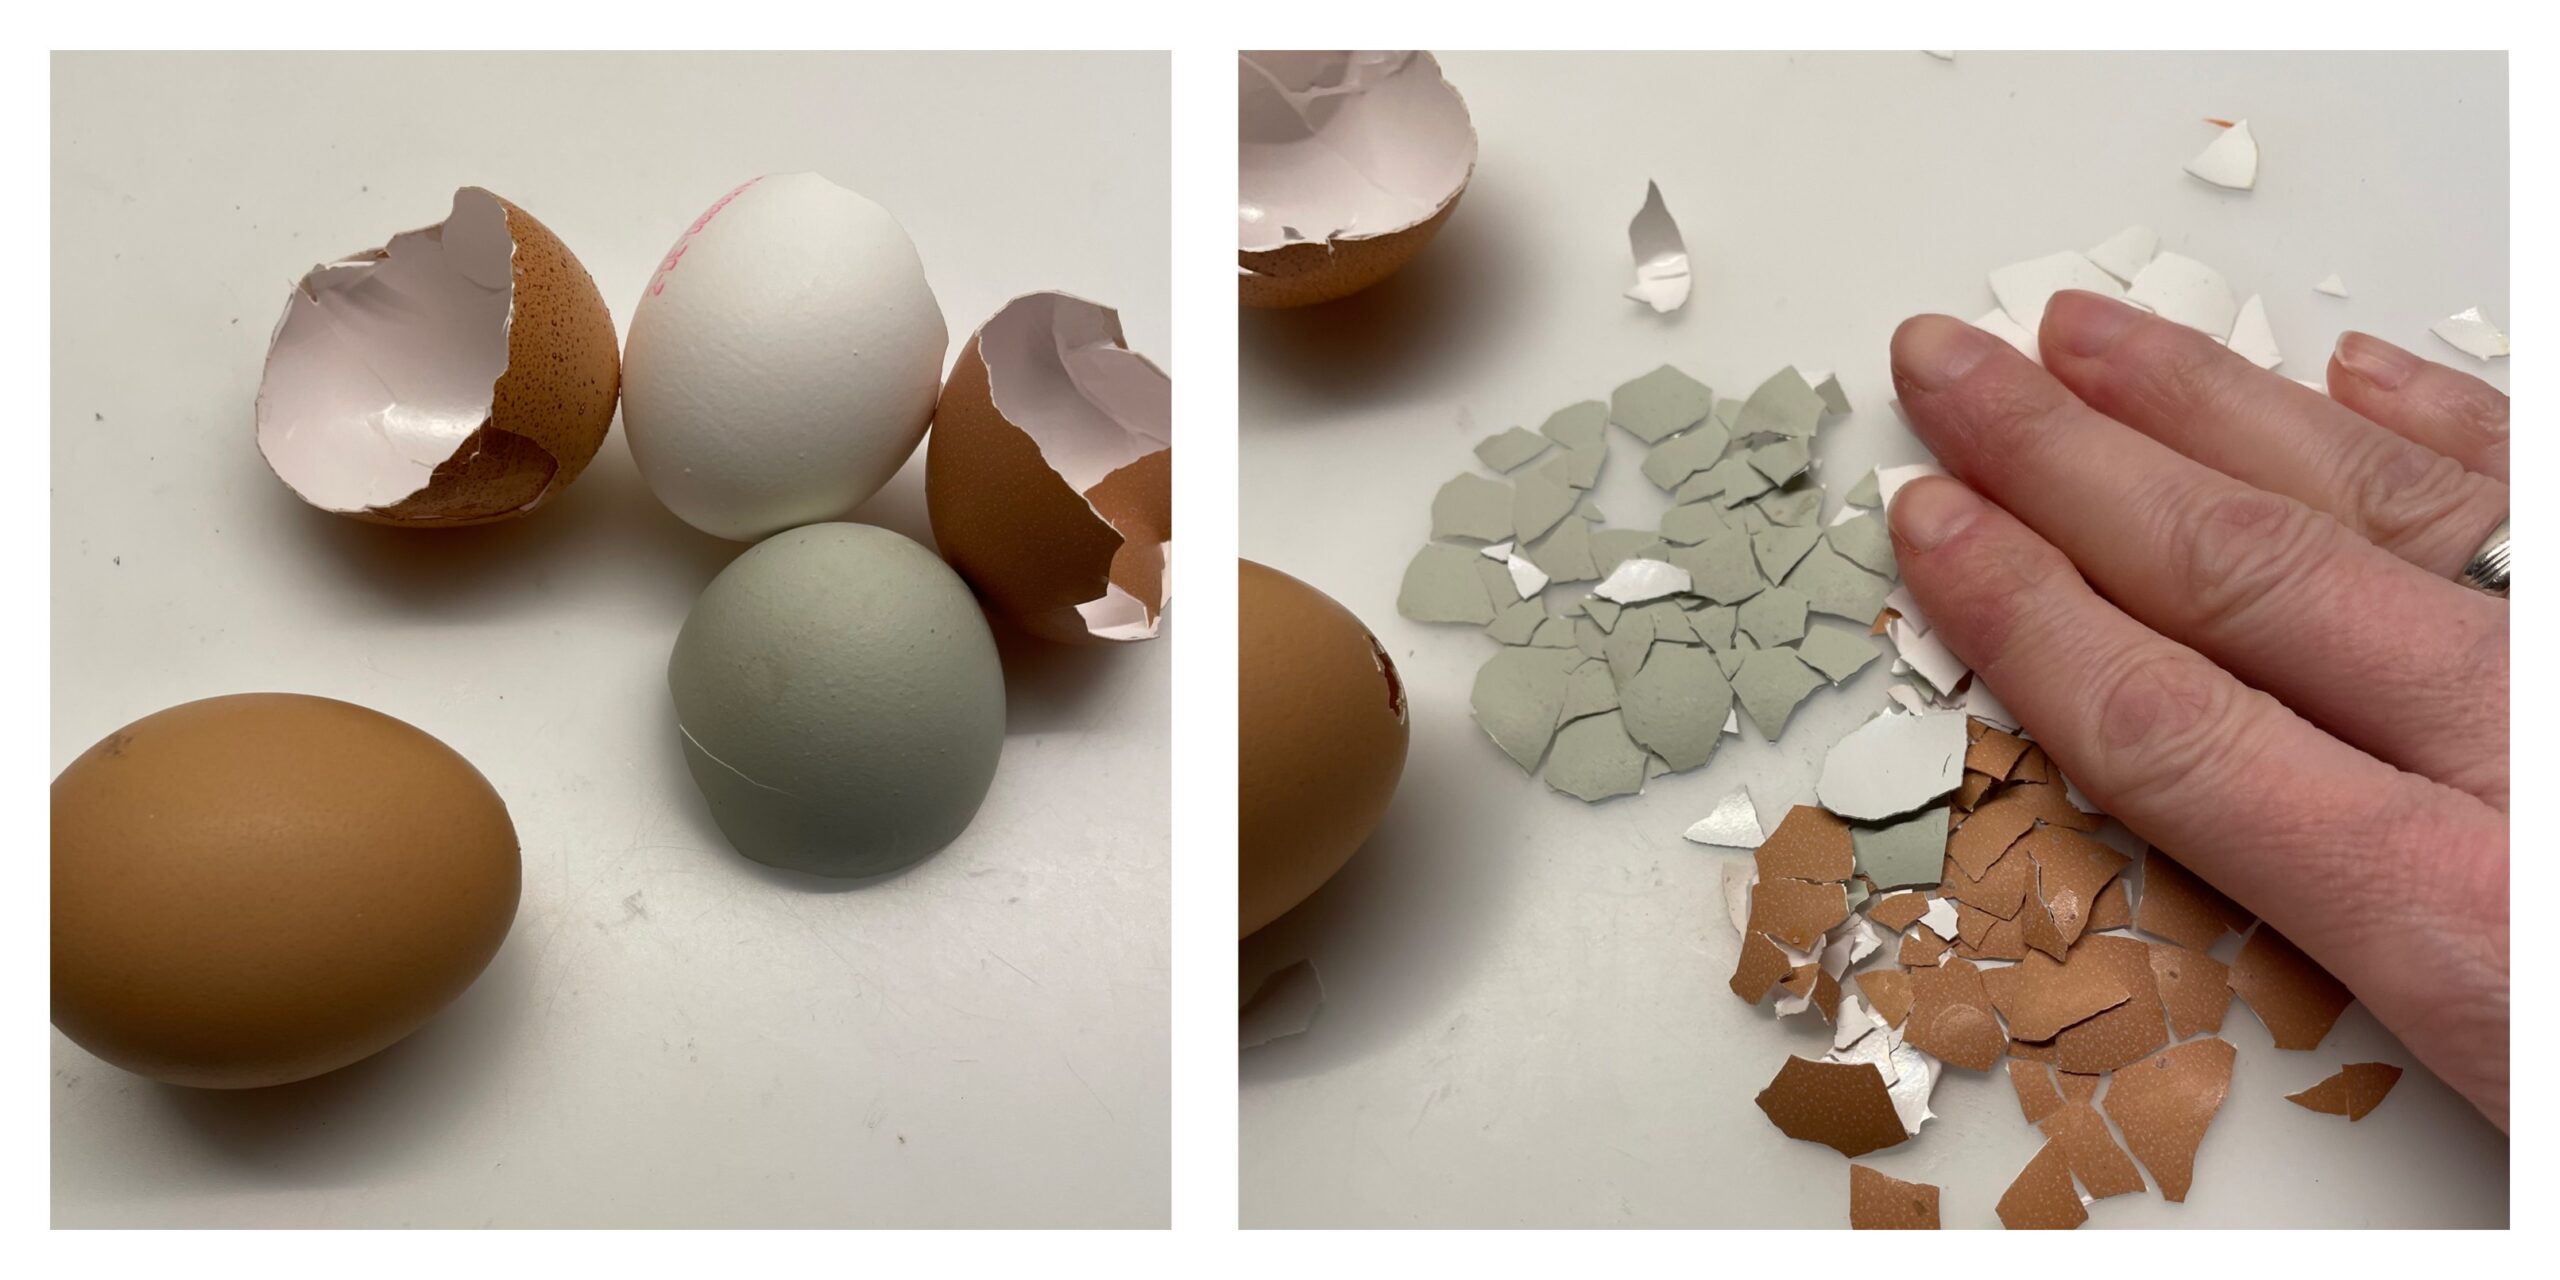 Bild zum Schritt 1 für die Kinder-Beschäftigung: 'Verwendet verschiedenfarbige Eierschalen, die ihr bereits Tage vorher schon sammelt...'